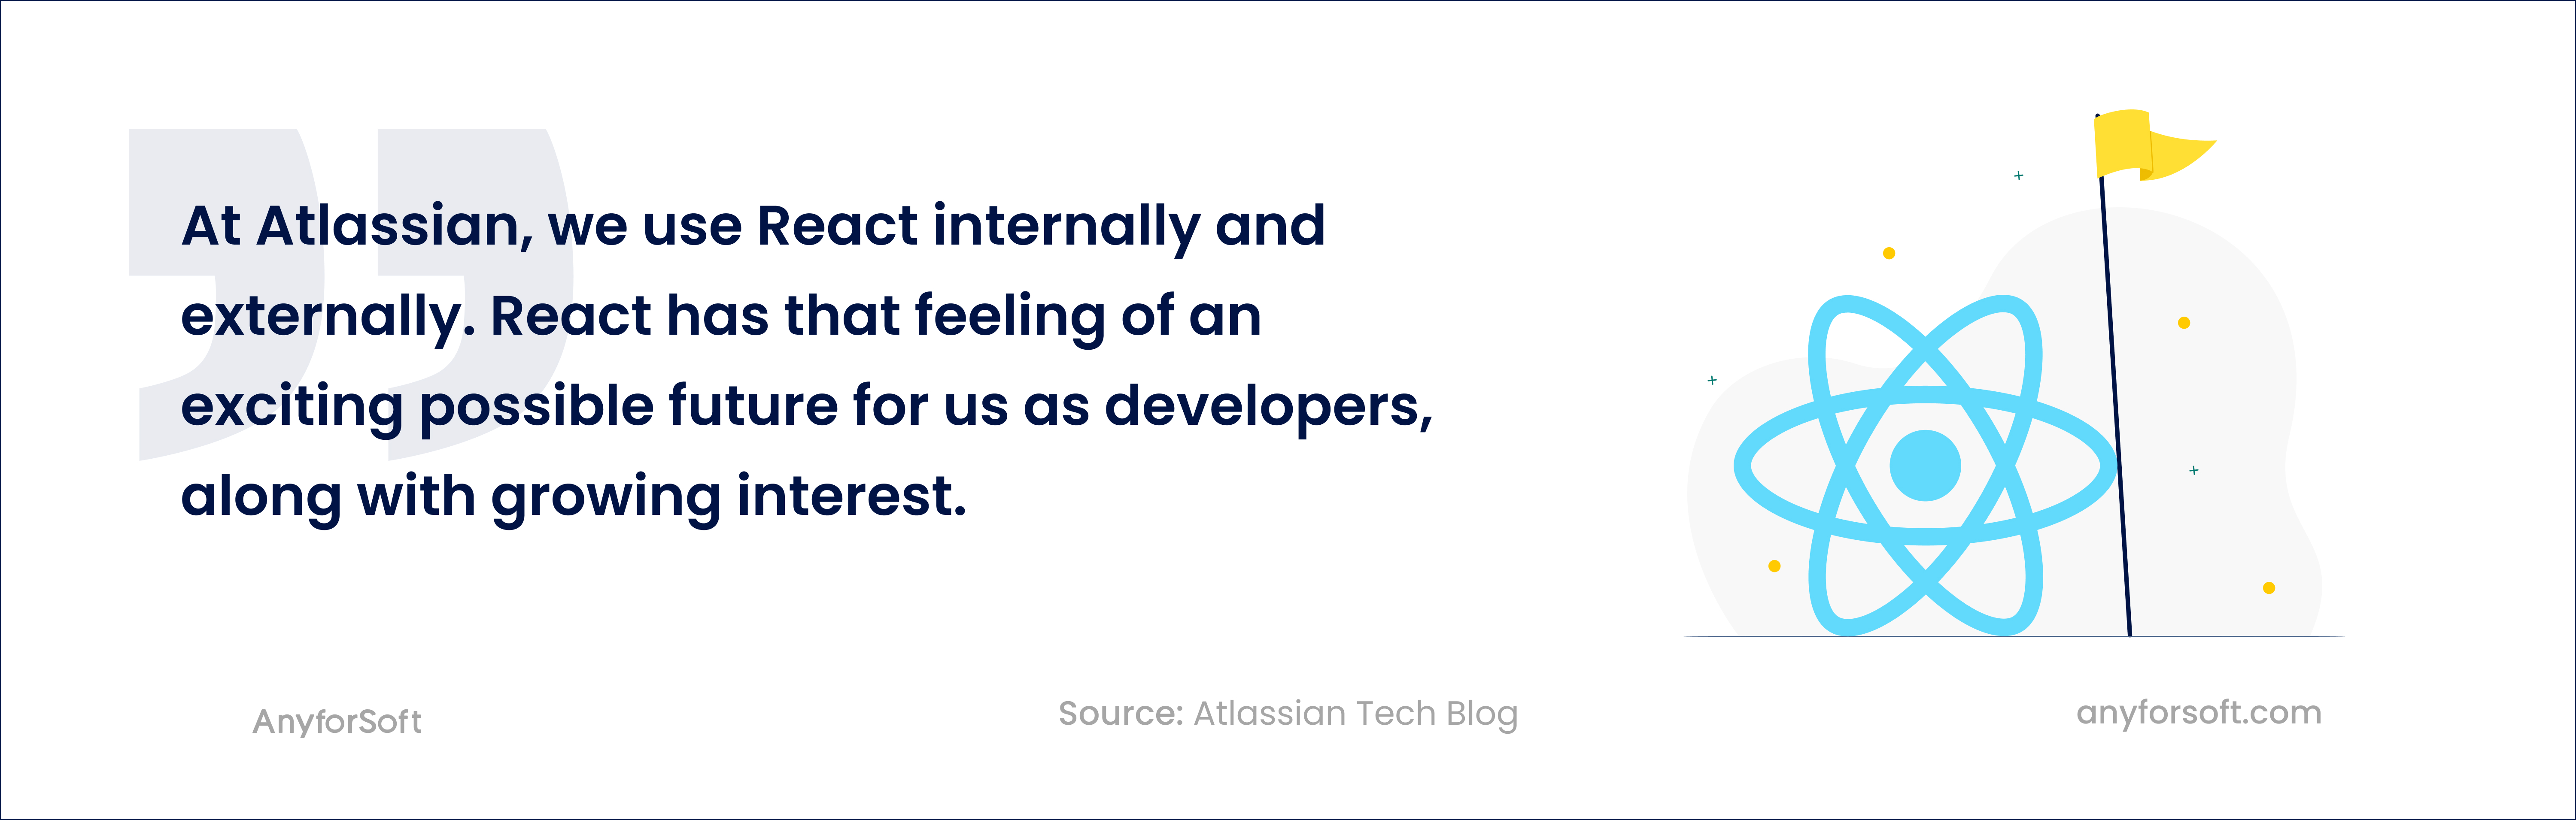 Atlassian tech blog quote